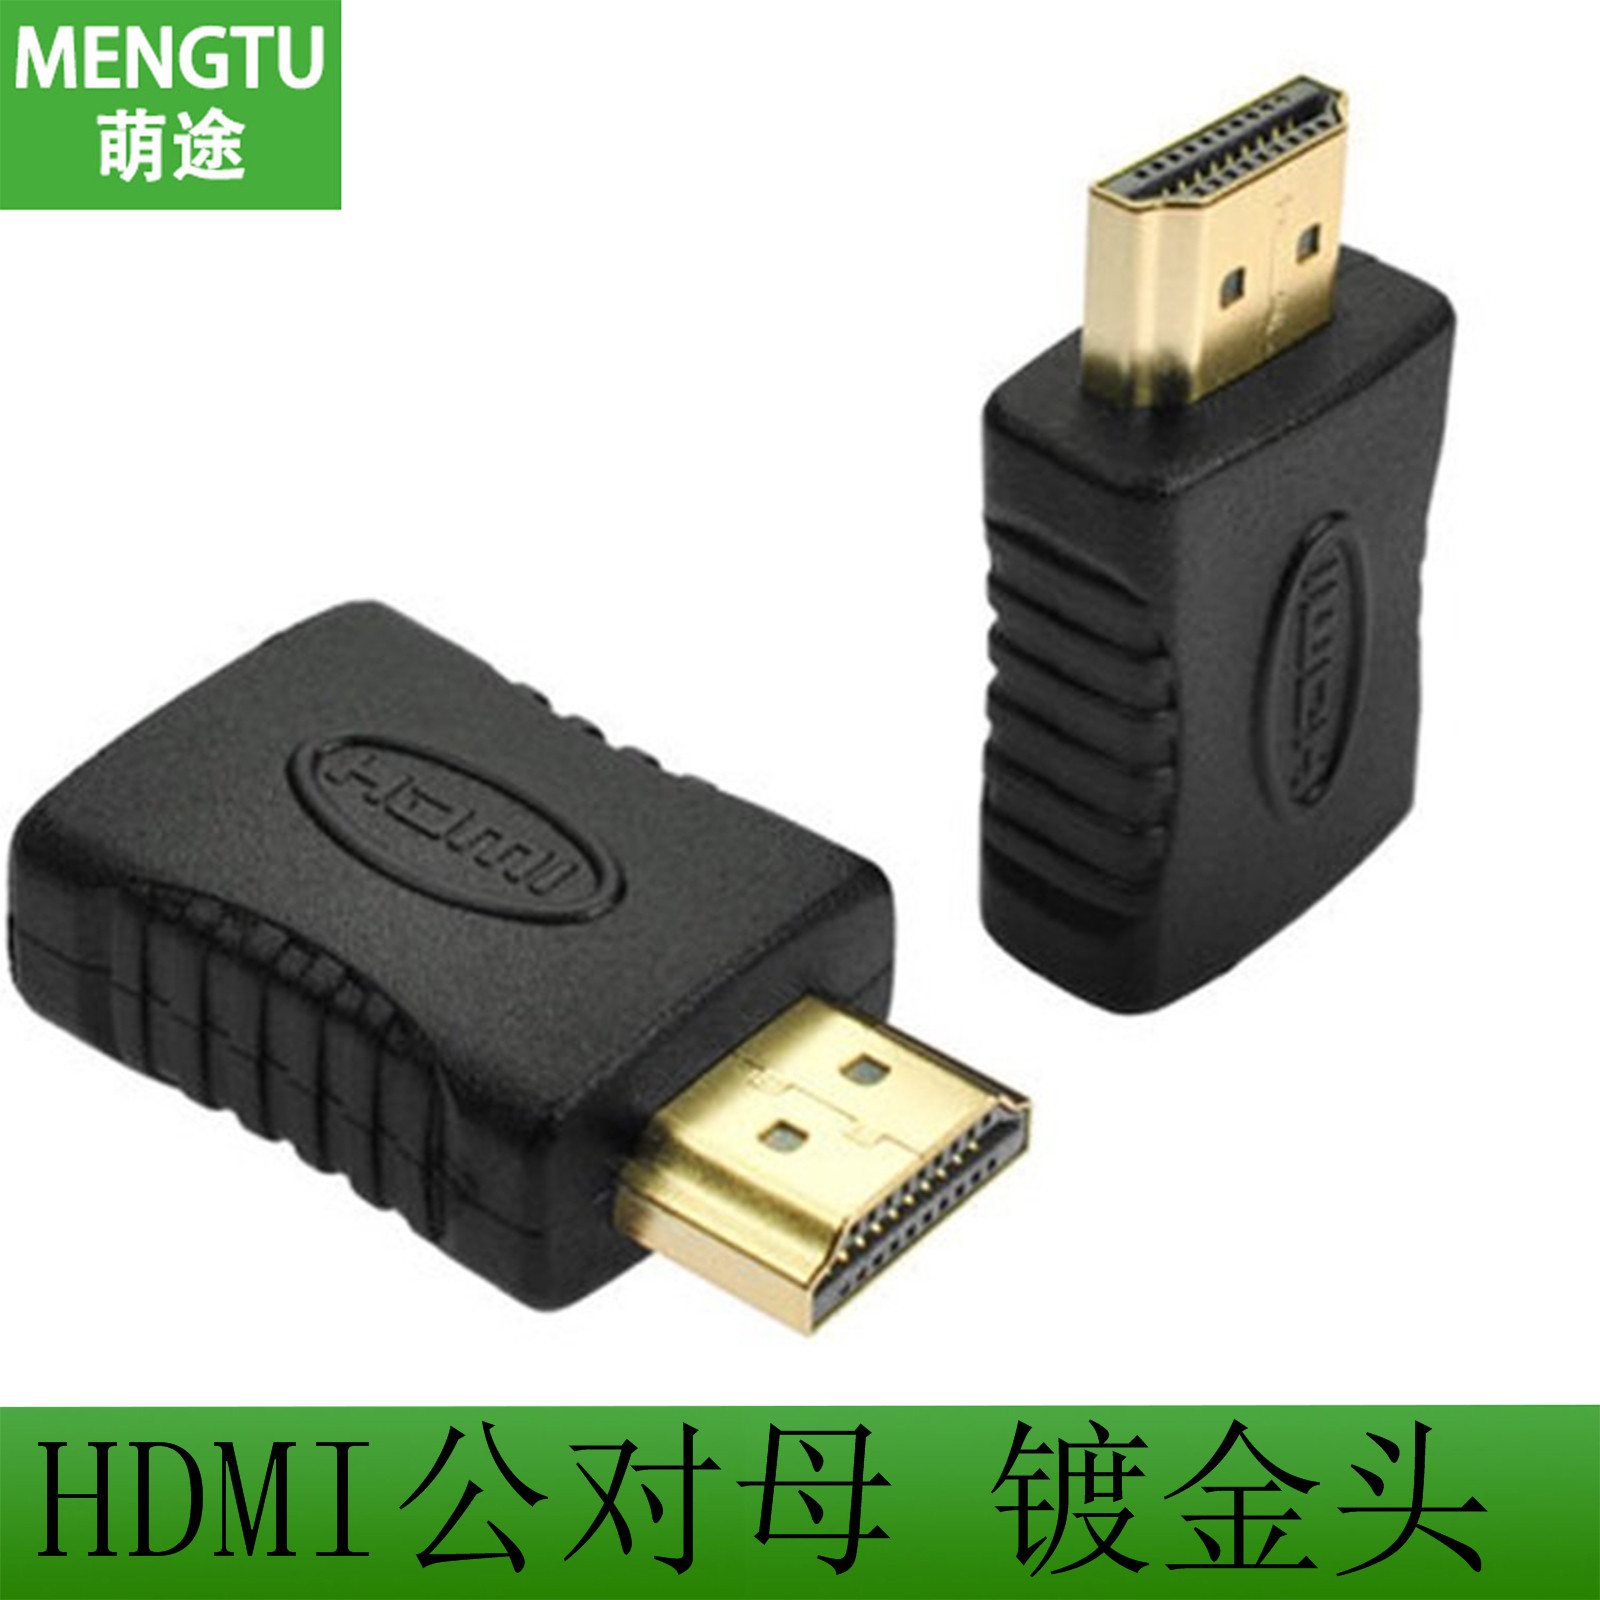 现货提供 标准HDMI公对母 高清HDMI转接头 HDMI公对母电脑转接头